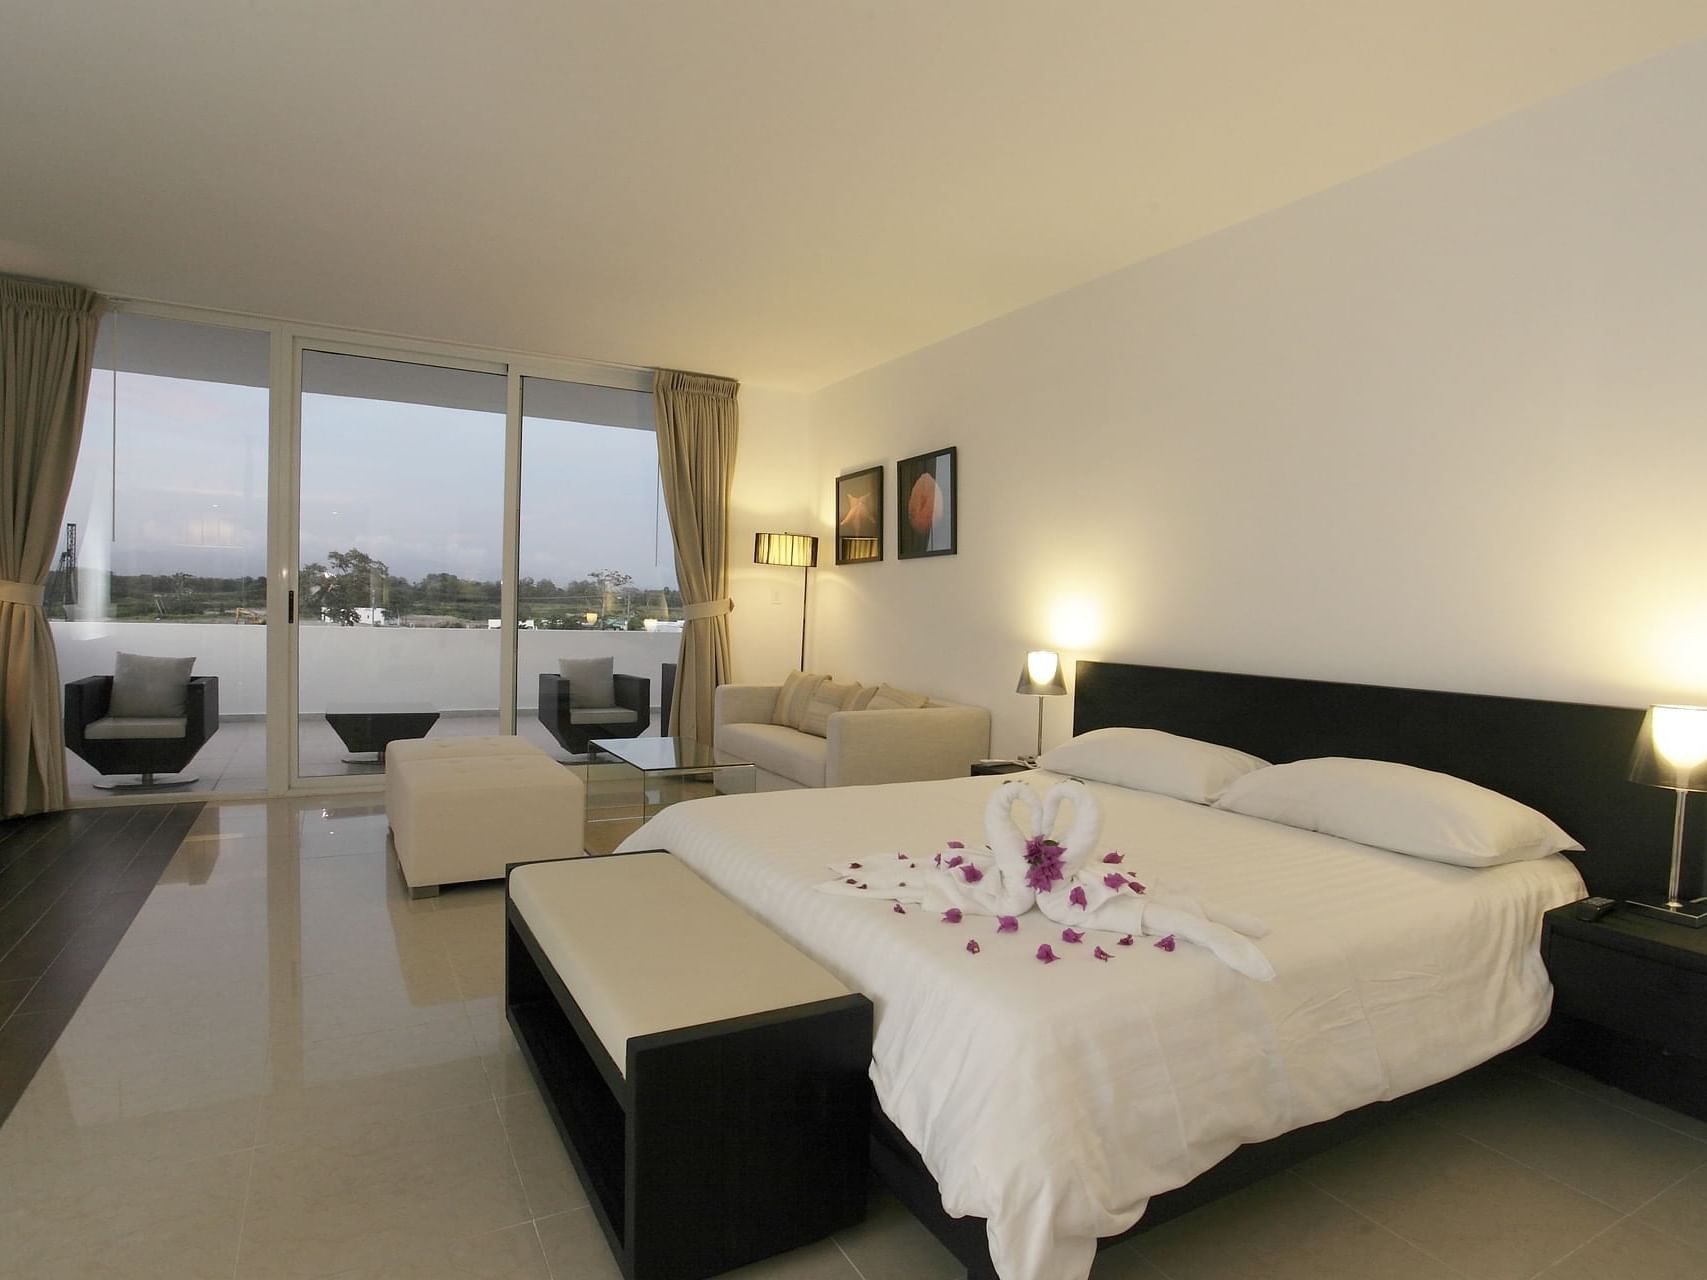 Town Center Deluxe bedroom at Playa Blanca Beach Resort